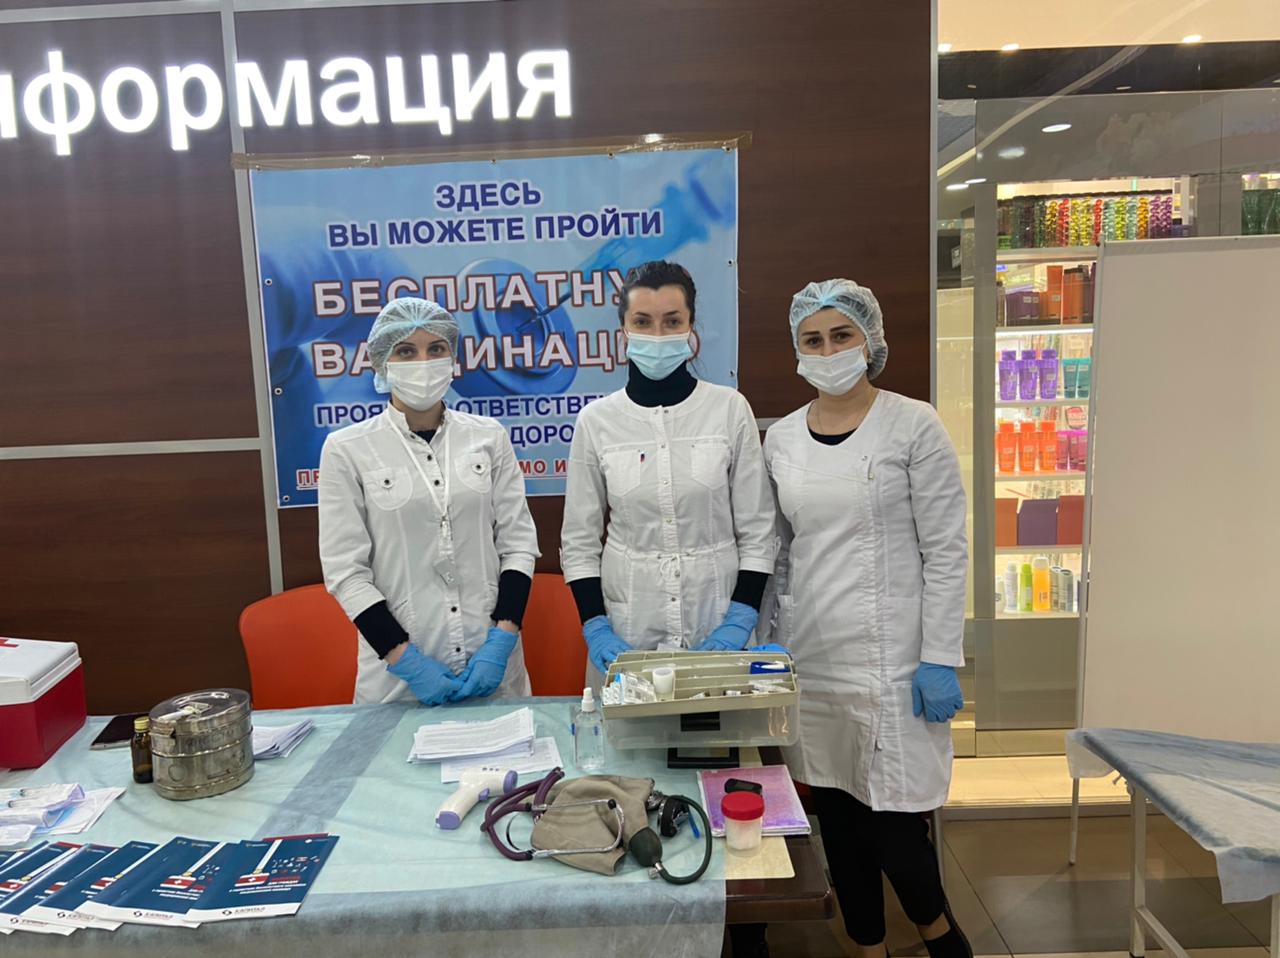 Выездные бригады ГБУЗ "Поликлиника № 4" продолжают вакцинировать пациентов от Covid-19